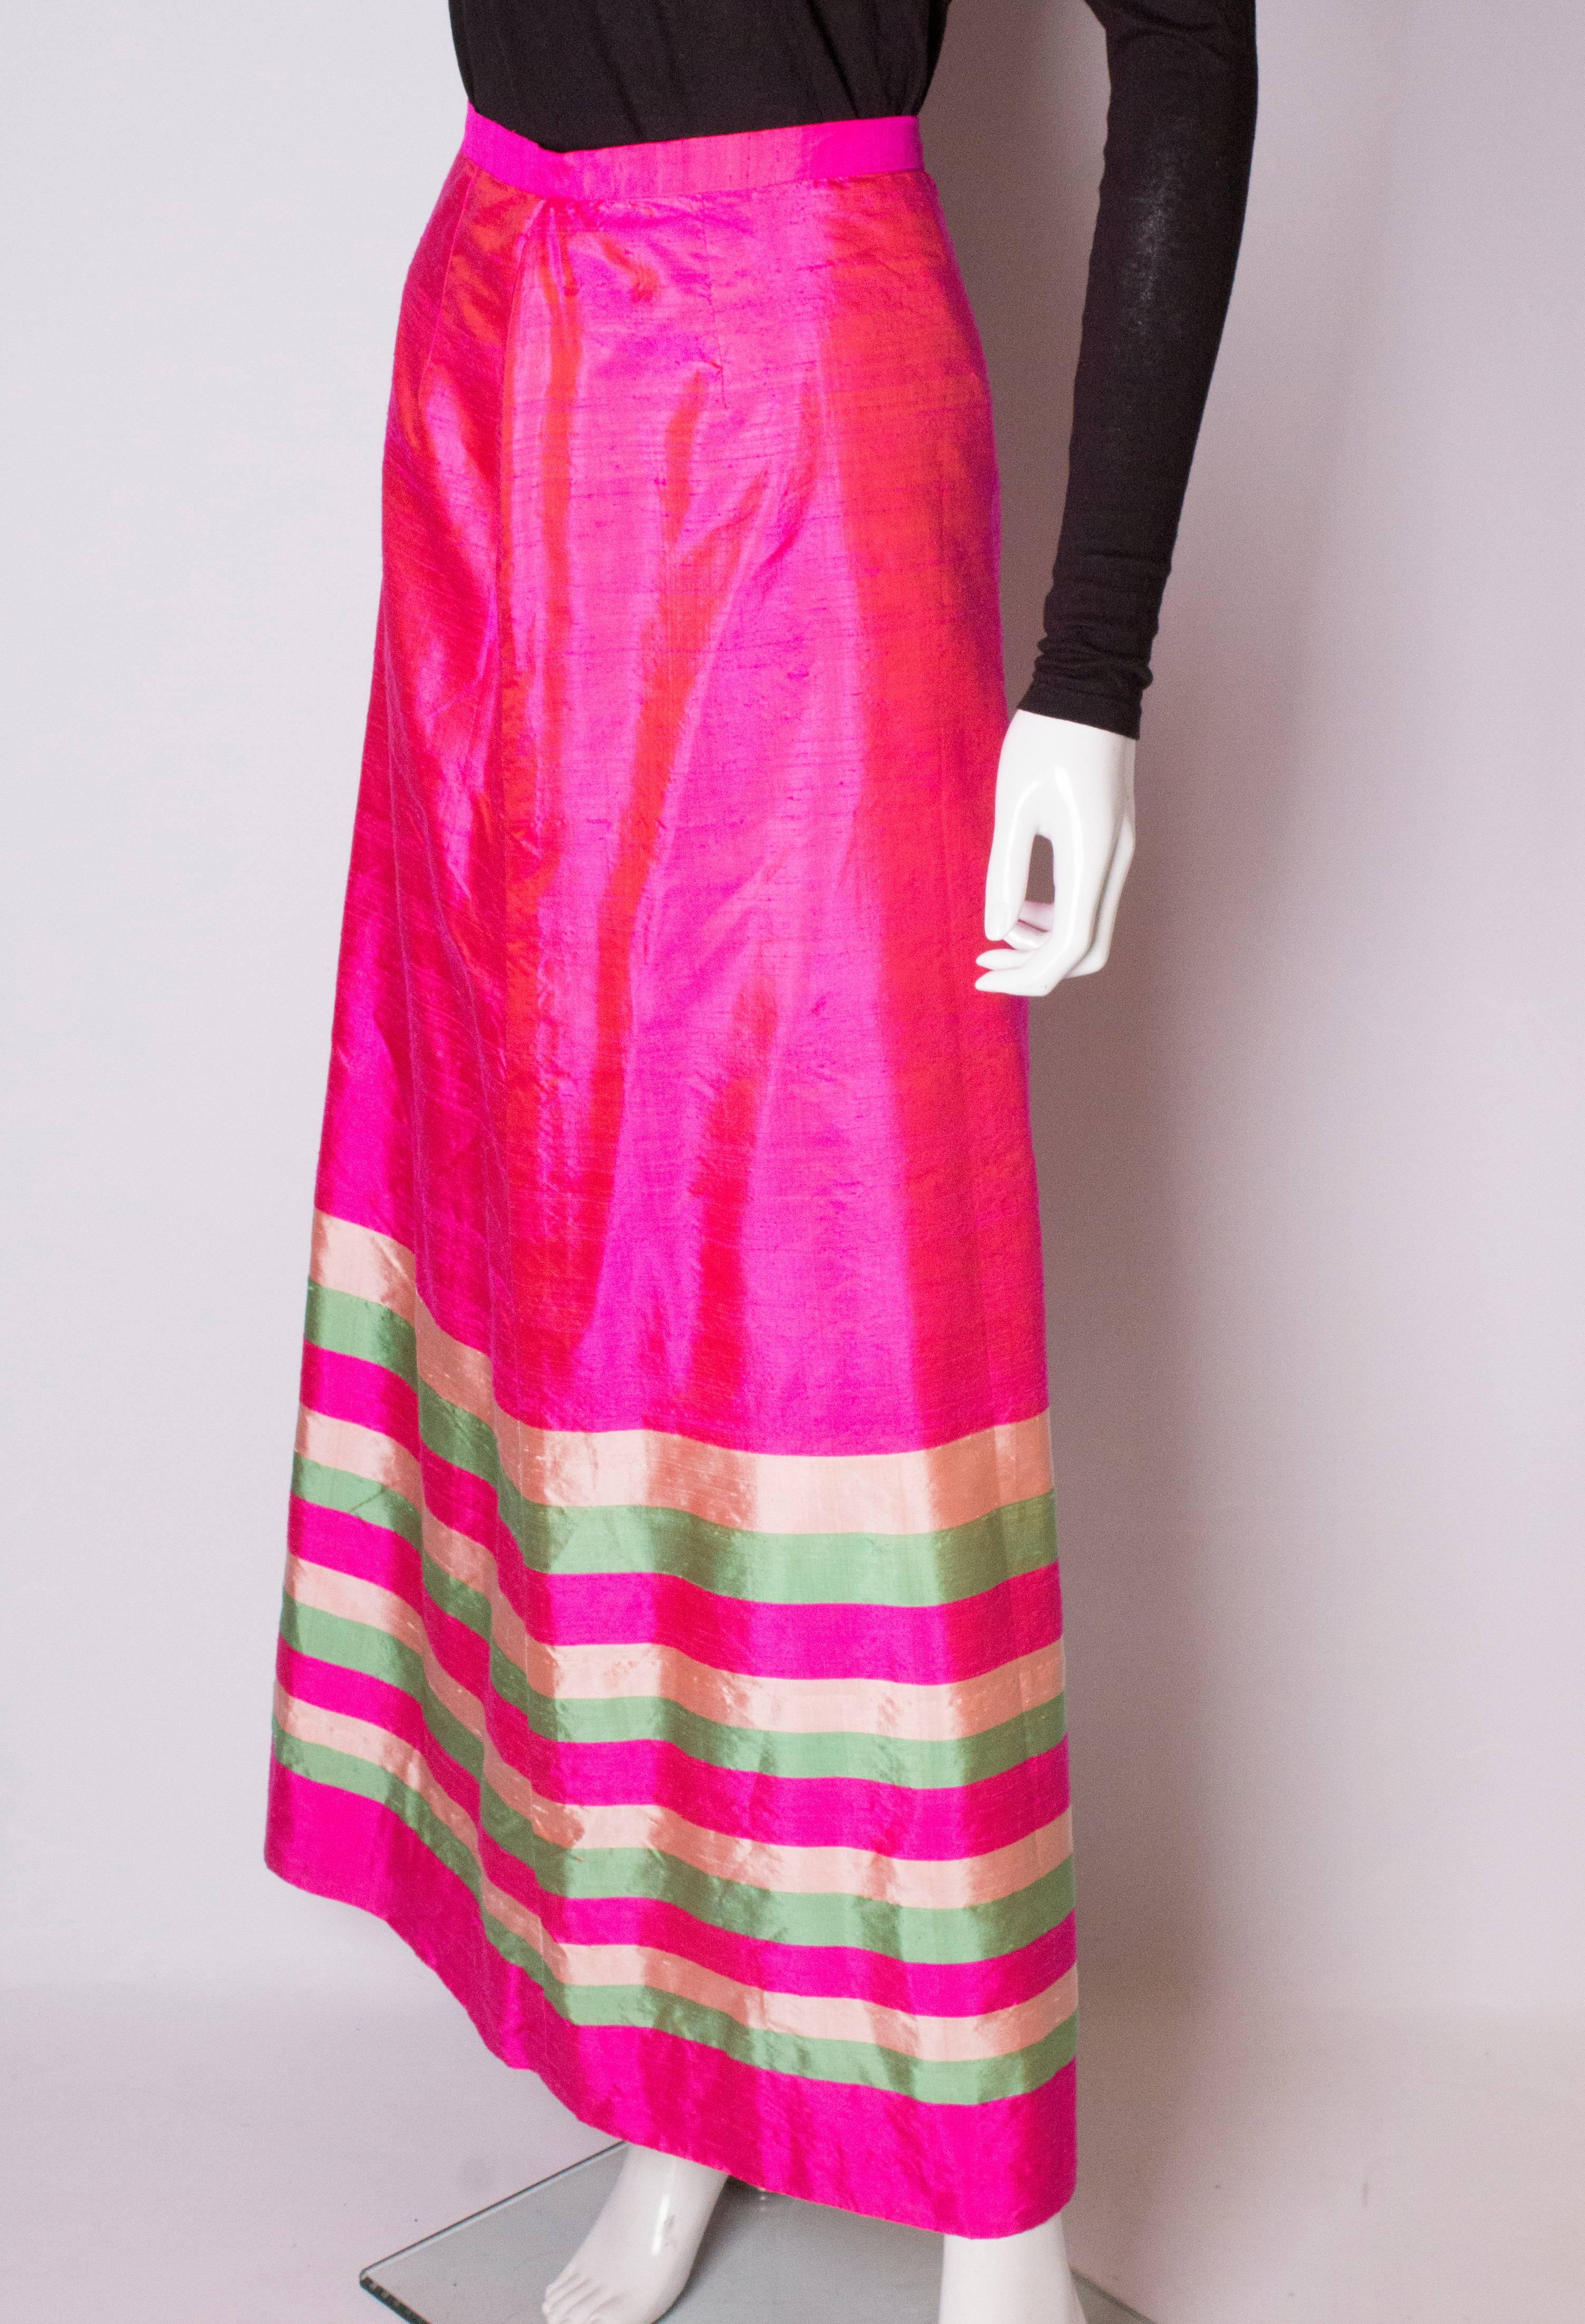 Une superbe jupe vintage en soie rose avec de la crème  et des rayures horizontales vertes à l'ourlet. La jupe est entièrement doublée et comporte une fermeture éclair centrale au dos.